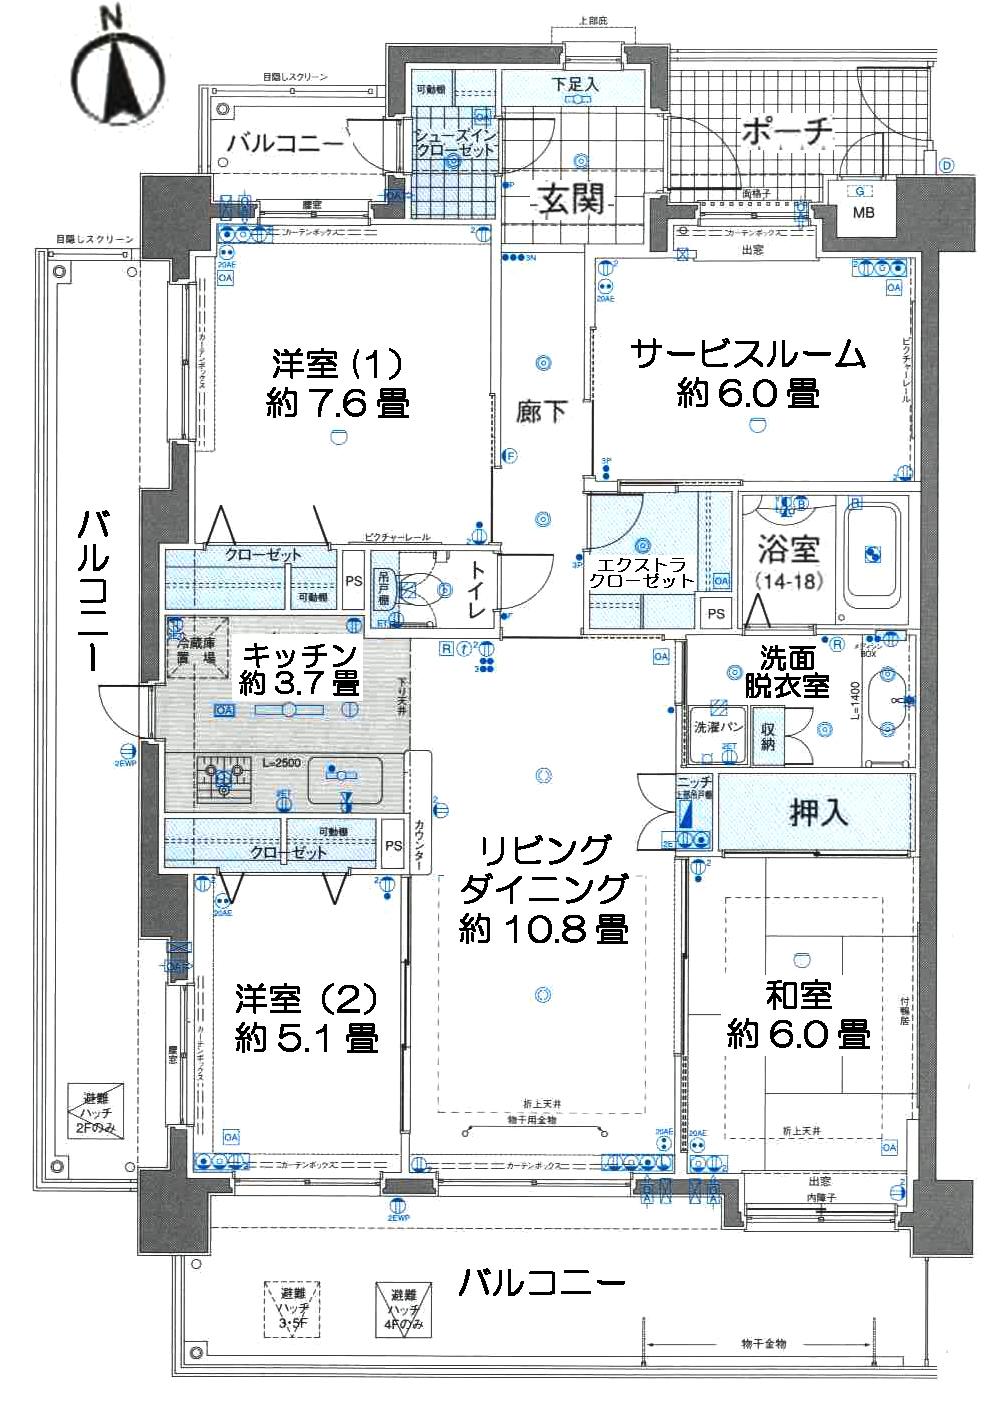 Floor plan. 3LDK + S (storeroom), Price 18.9 million yen, Occupied area 90.02 sq m , Balcony area 33.21 sq m floor plan